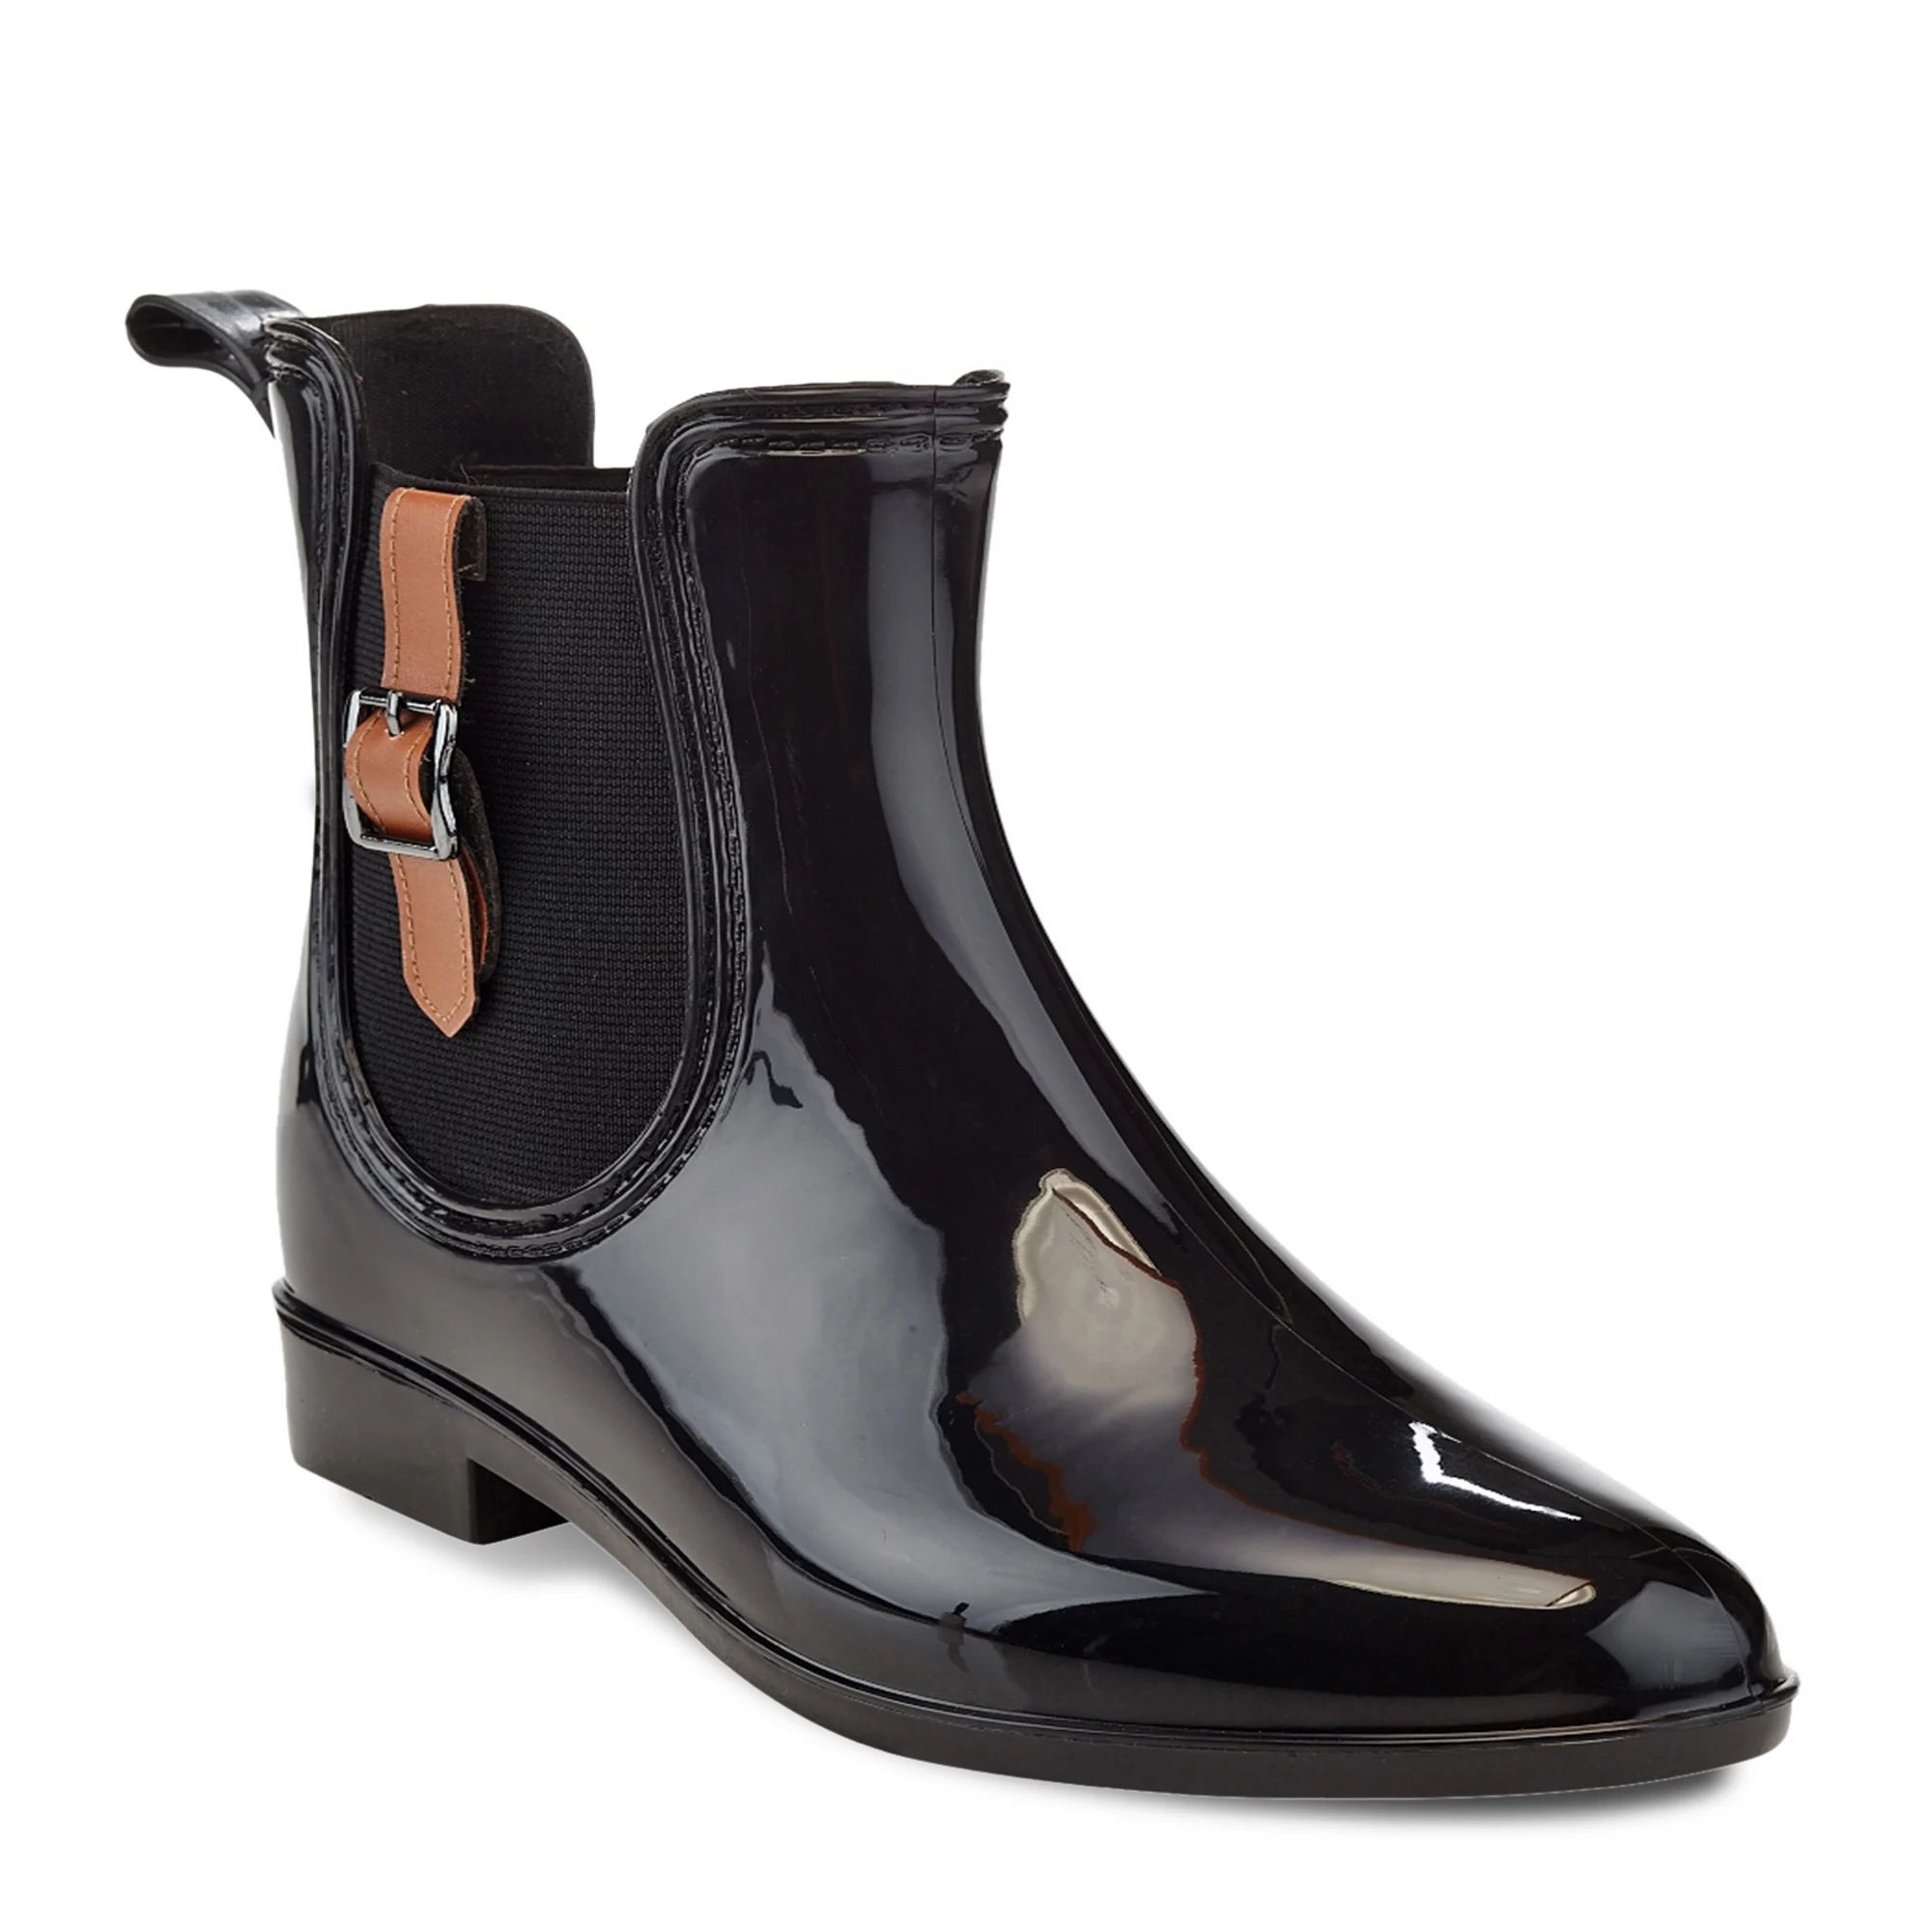 Henry Ferrera Clarity 5 Women's Water-Resistant Chelsea Rain Boots | Kohl's